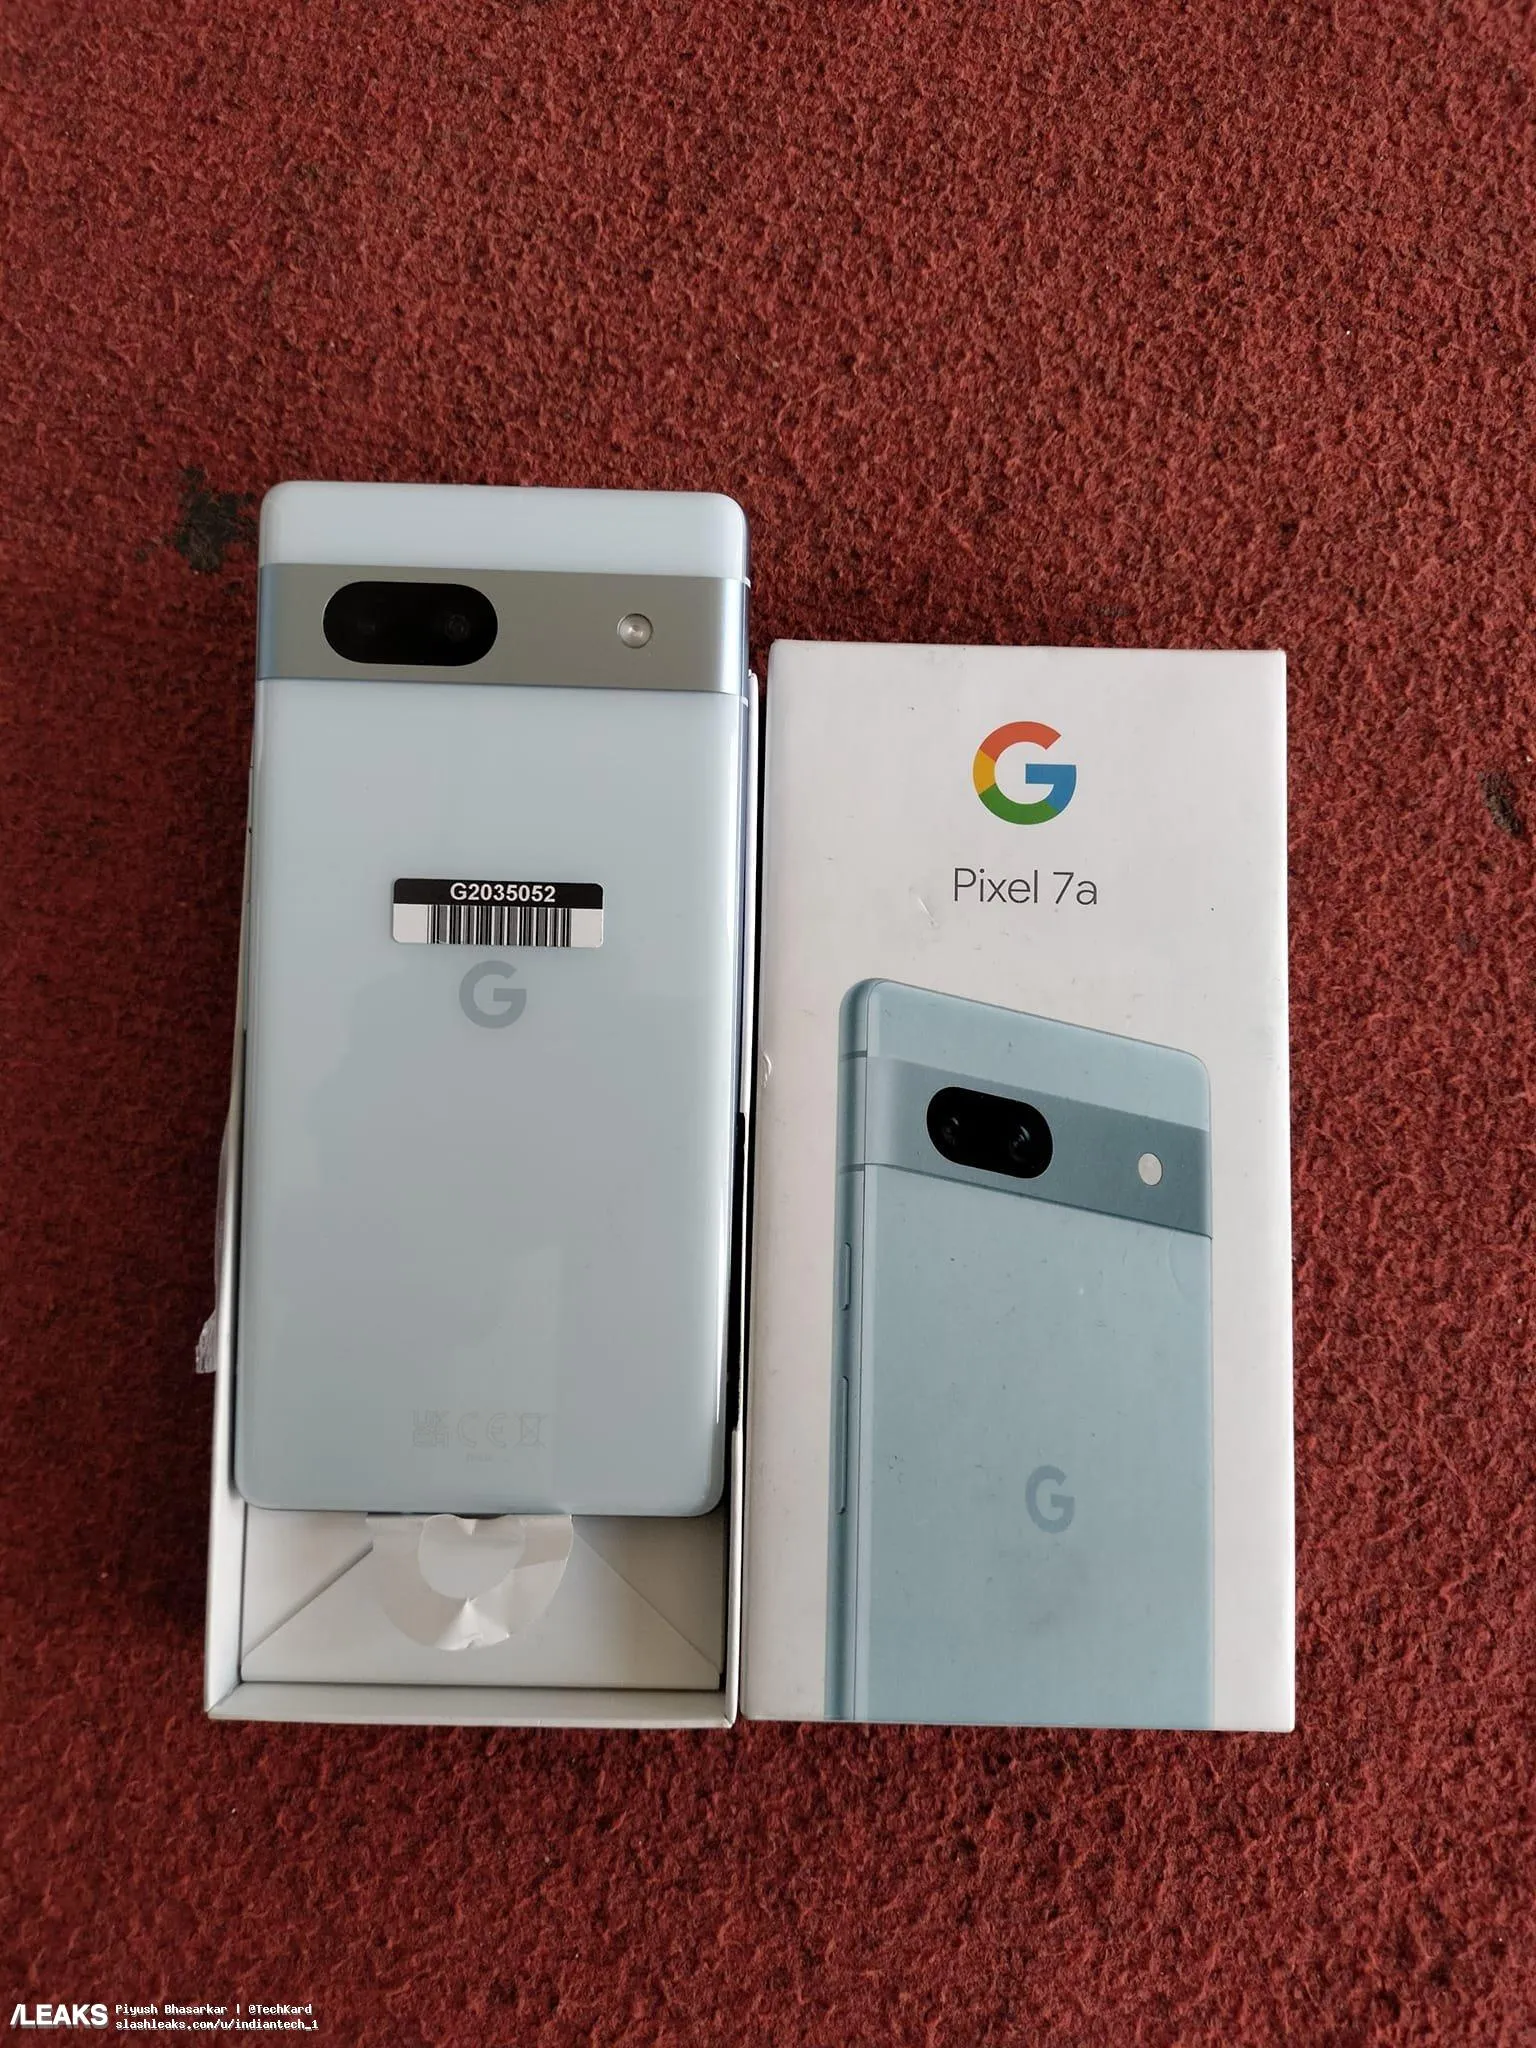 Google Pixel 7a blue unbox image 1